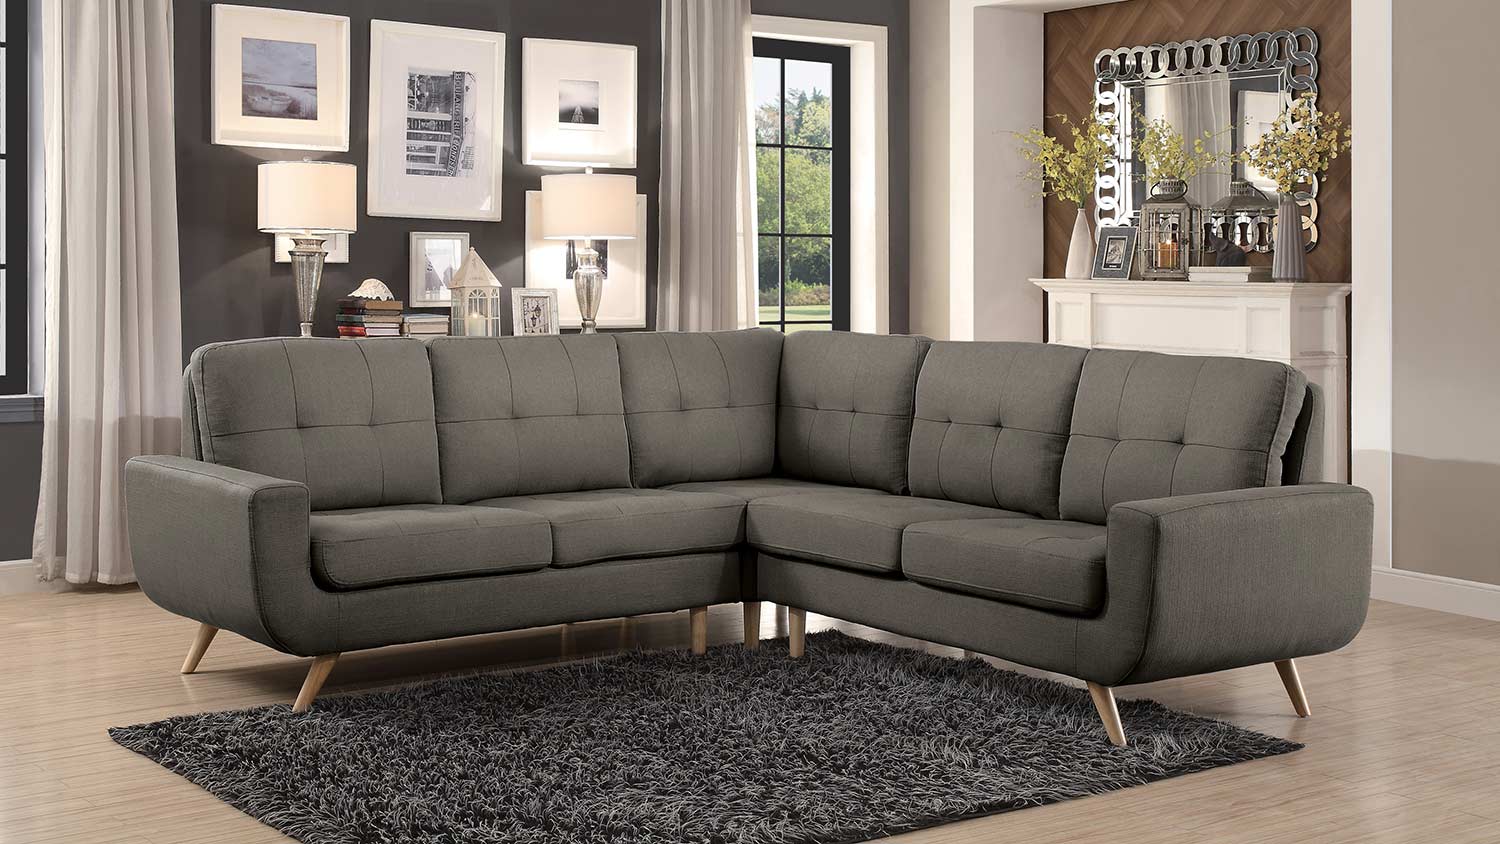 Homelegance Deryn Sectional Sofa - Grey